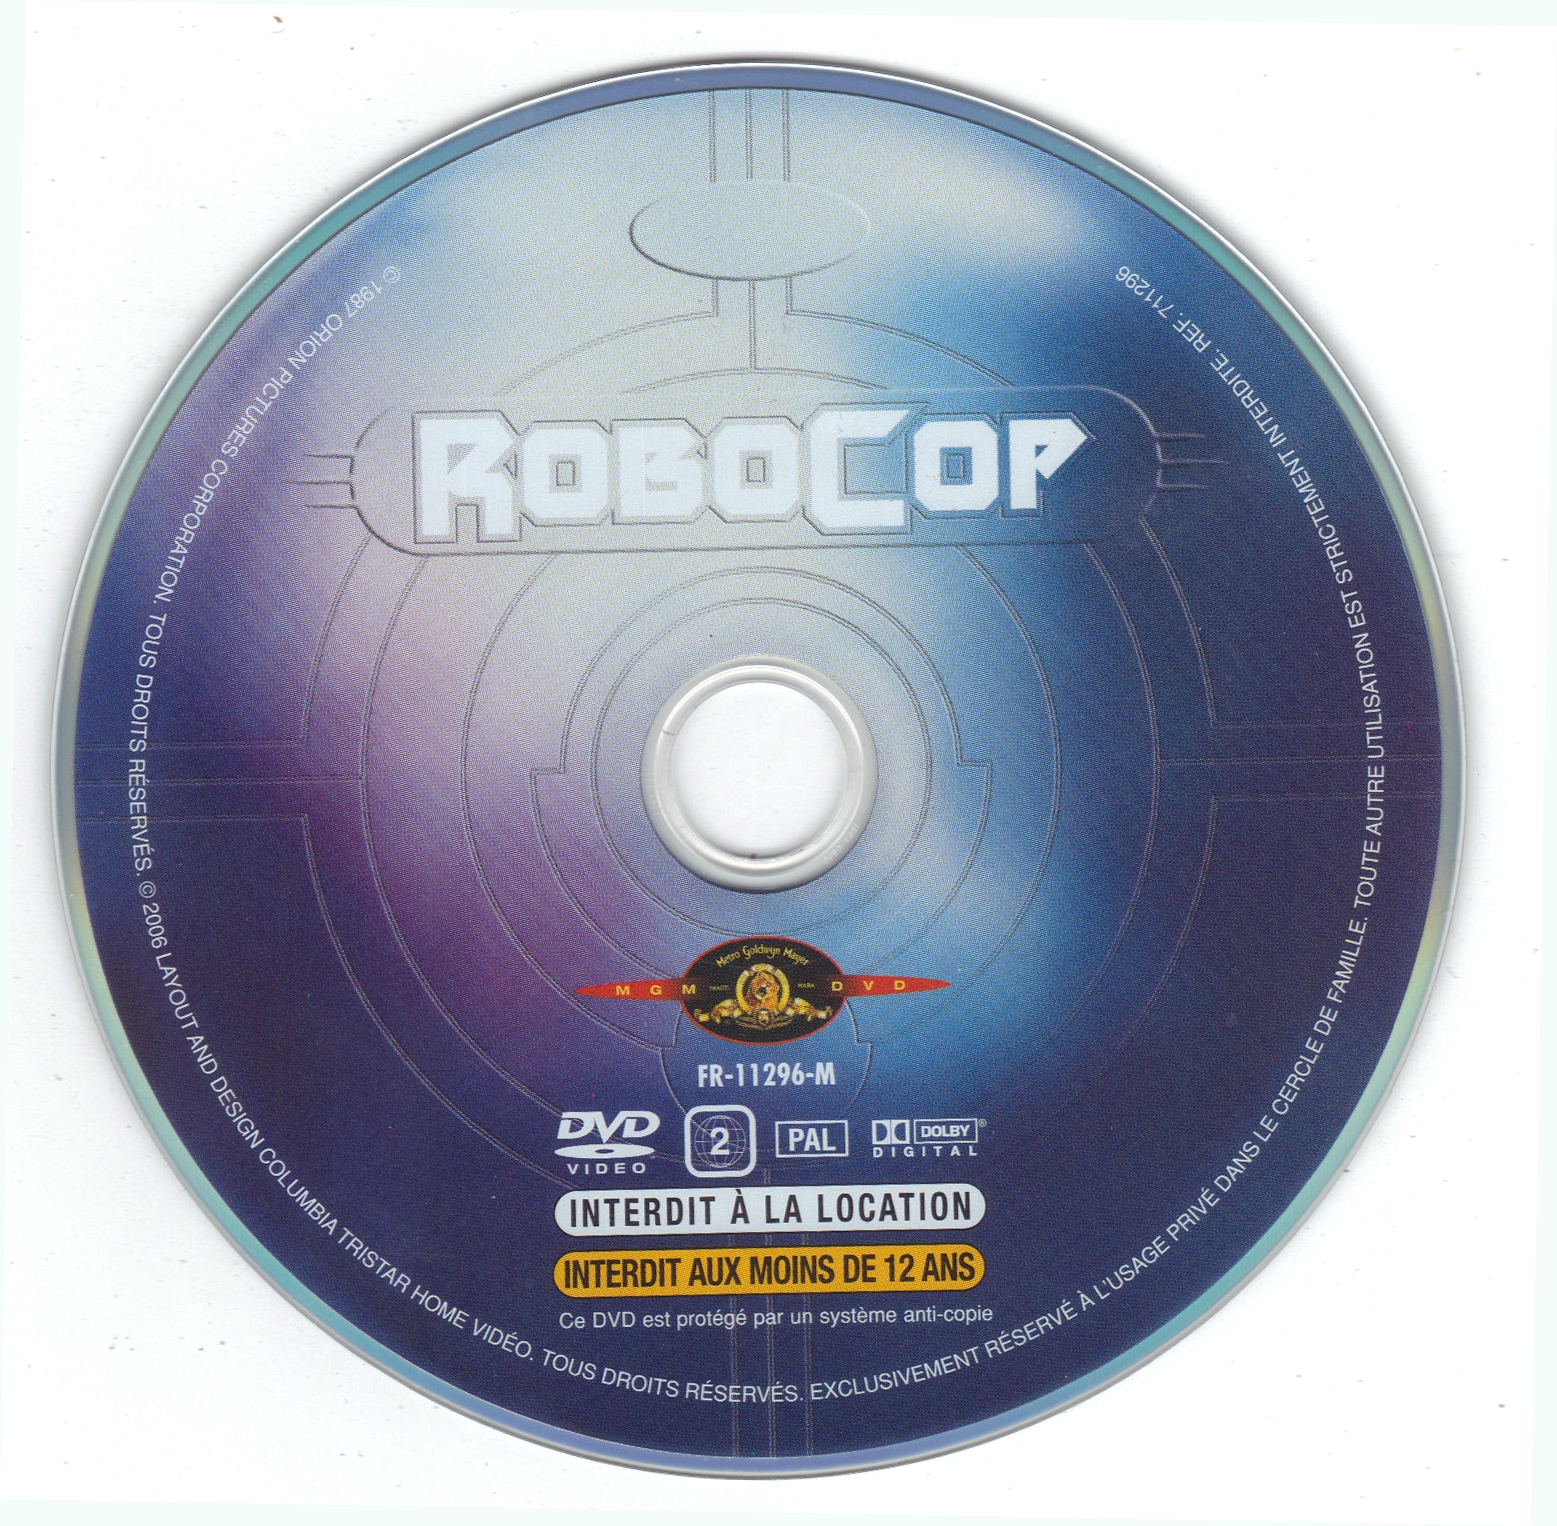 Robocop v2